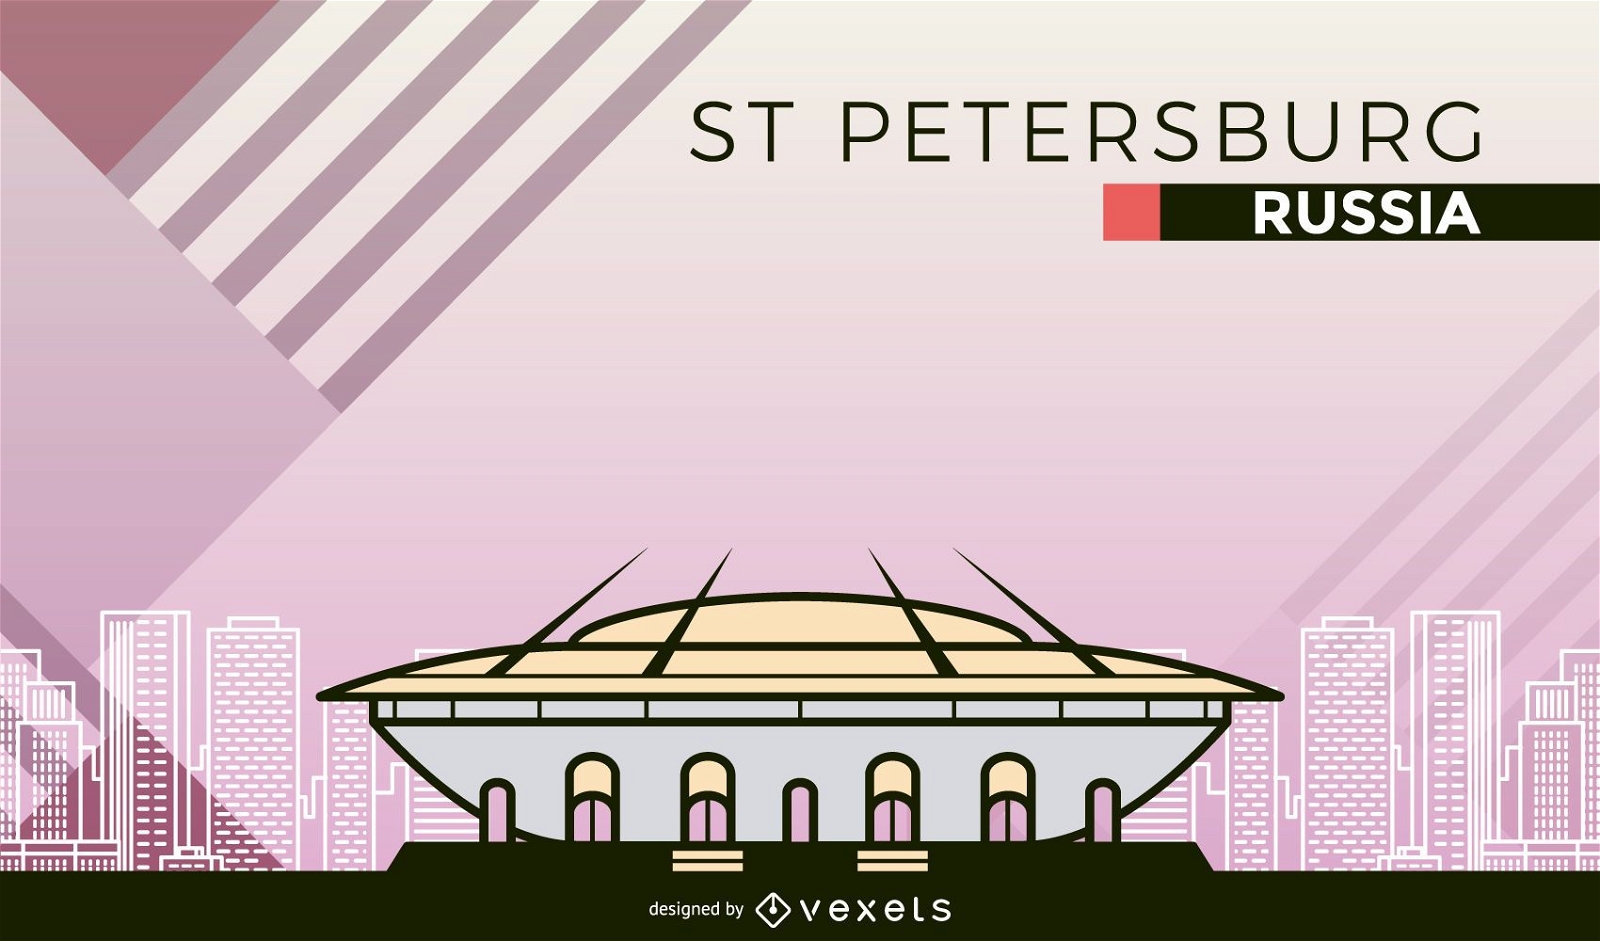 St Petersburg football stadium cartoon